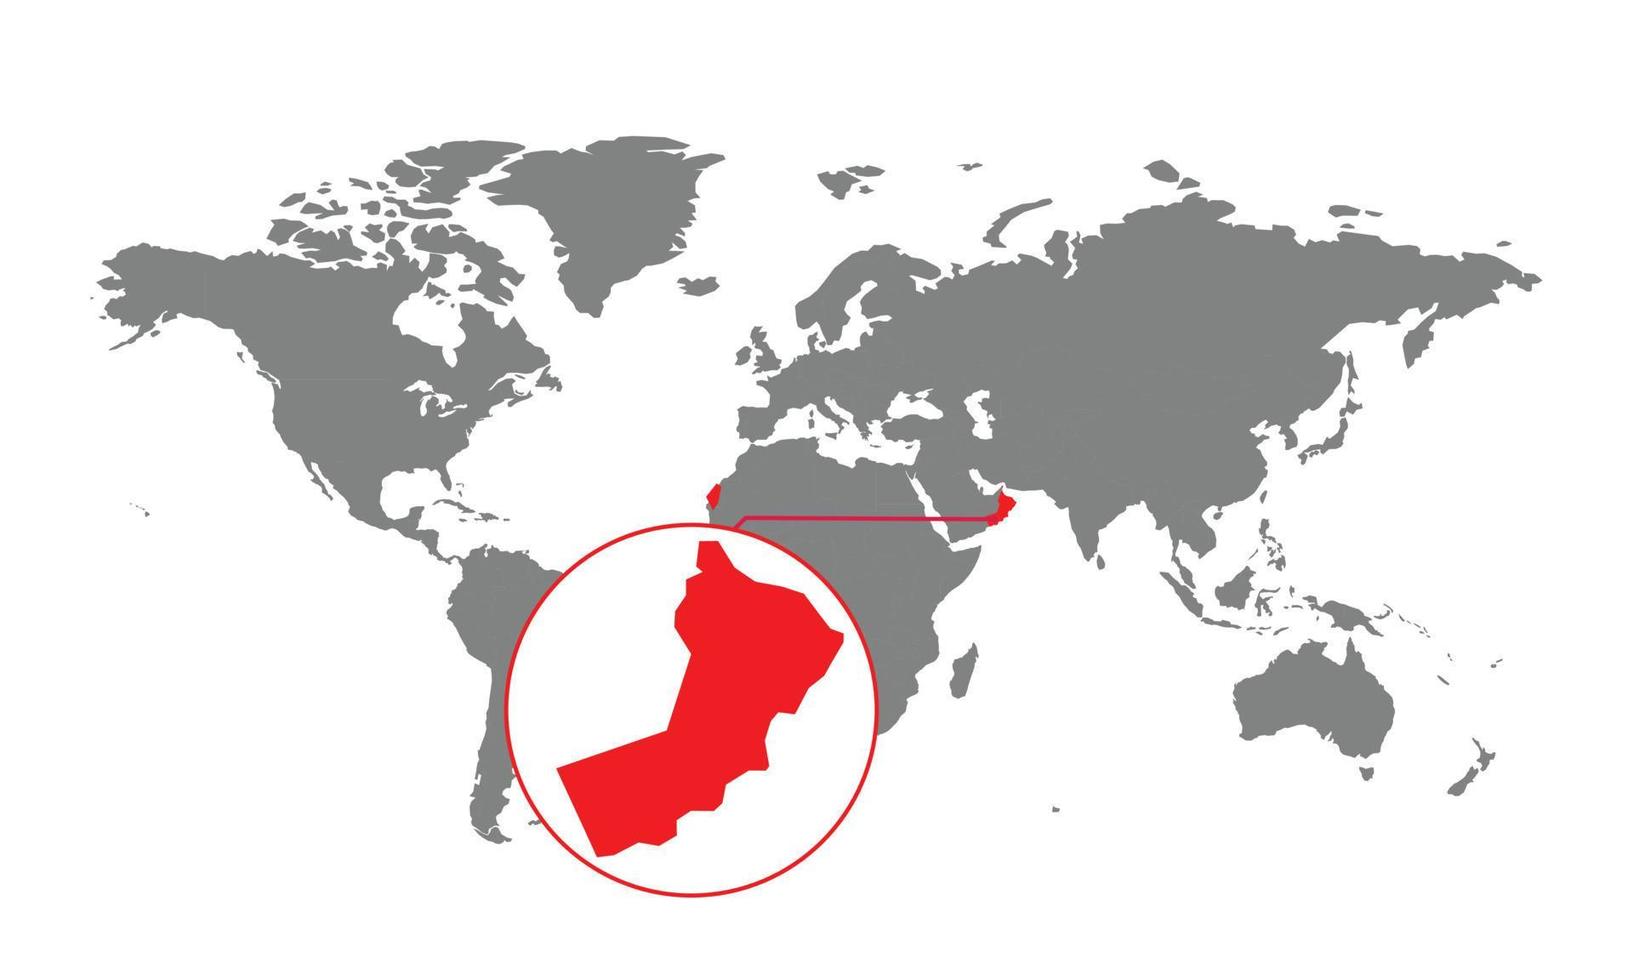 mise au point de la carte d'oman. carte du monde isolée. isolé sur fond blanc. illustration vectorielle. vecteur